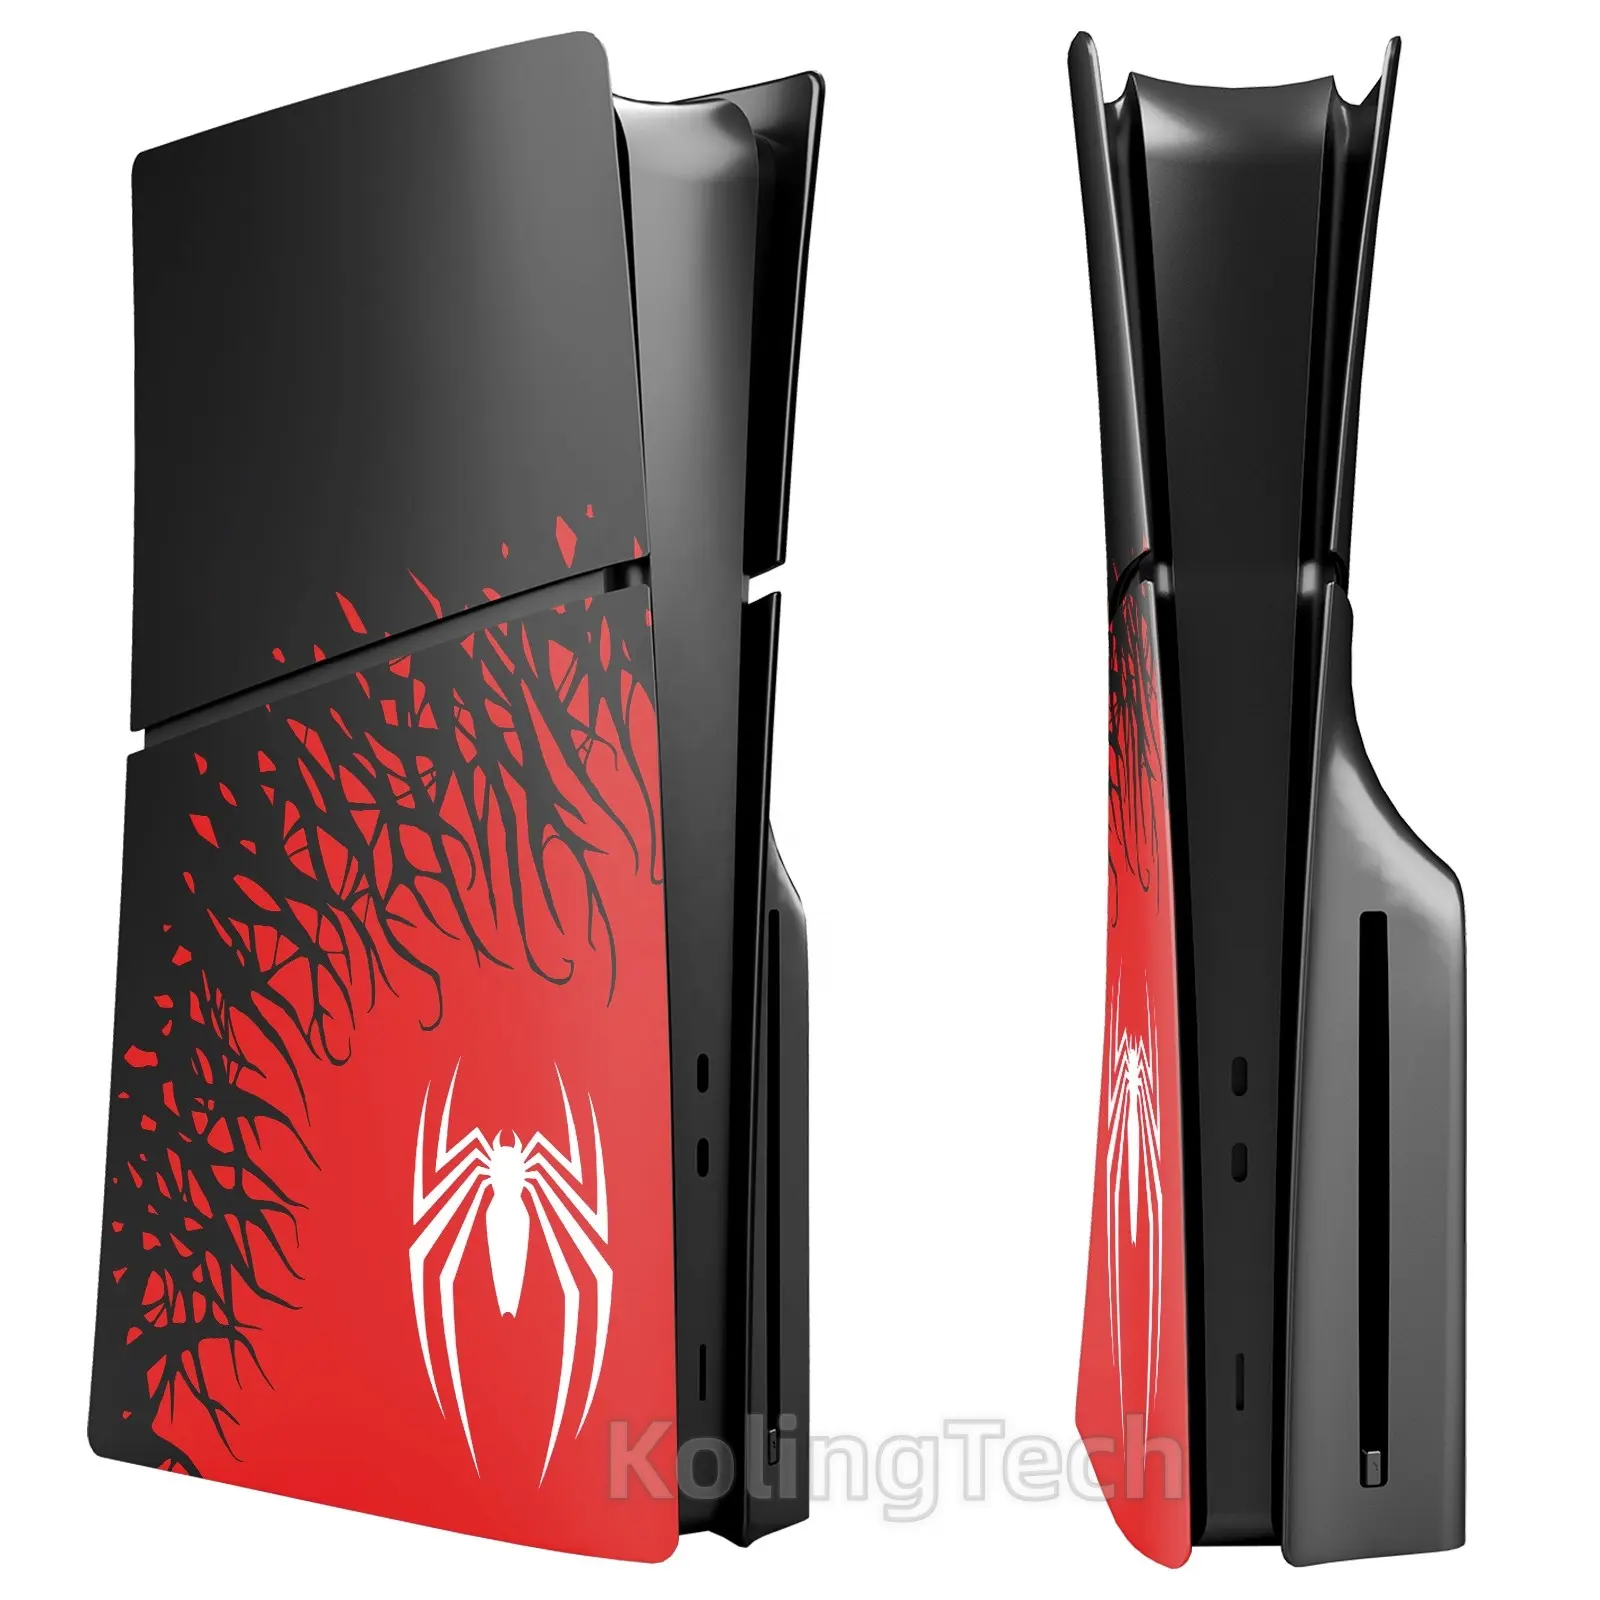 Nuevos paneles laterales a prueba de polvo separados personalizados, placa frontal de araña para PS5, placas de cubierta de consola delgada, accesorios para Playstation 5 Slim